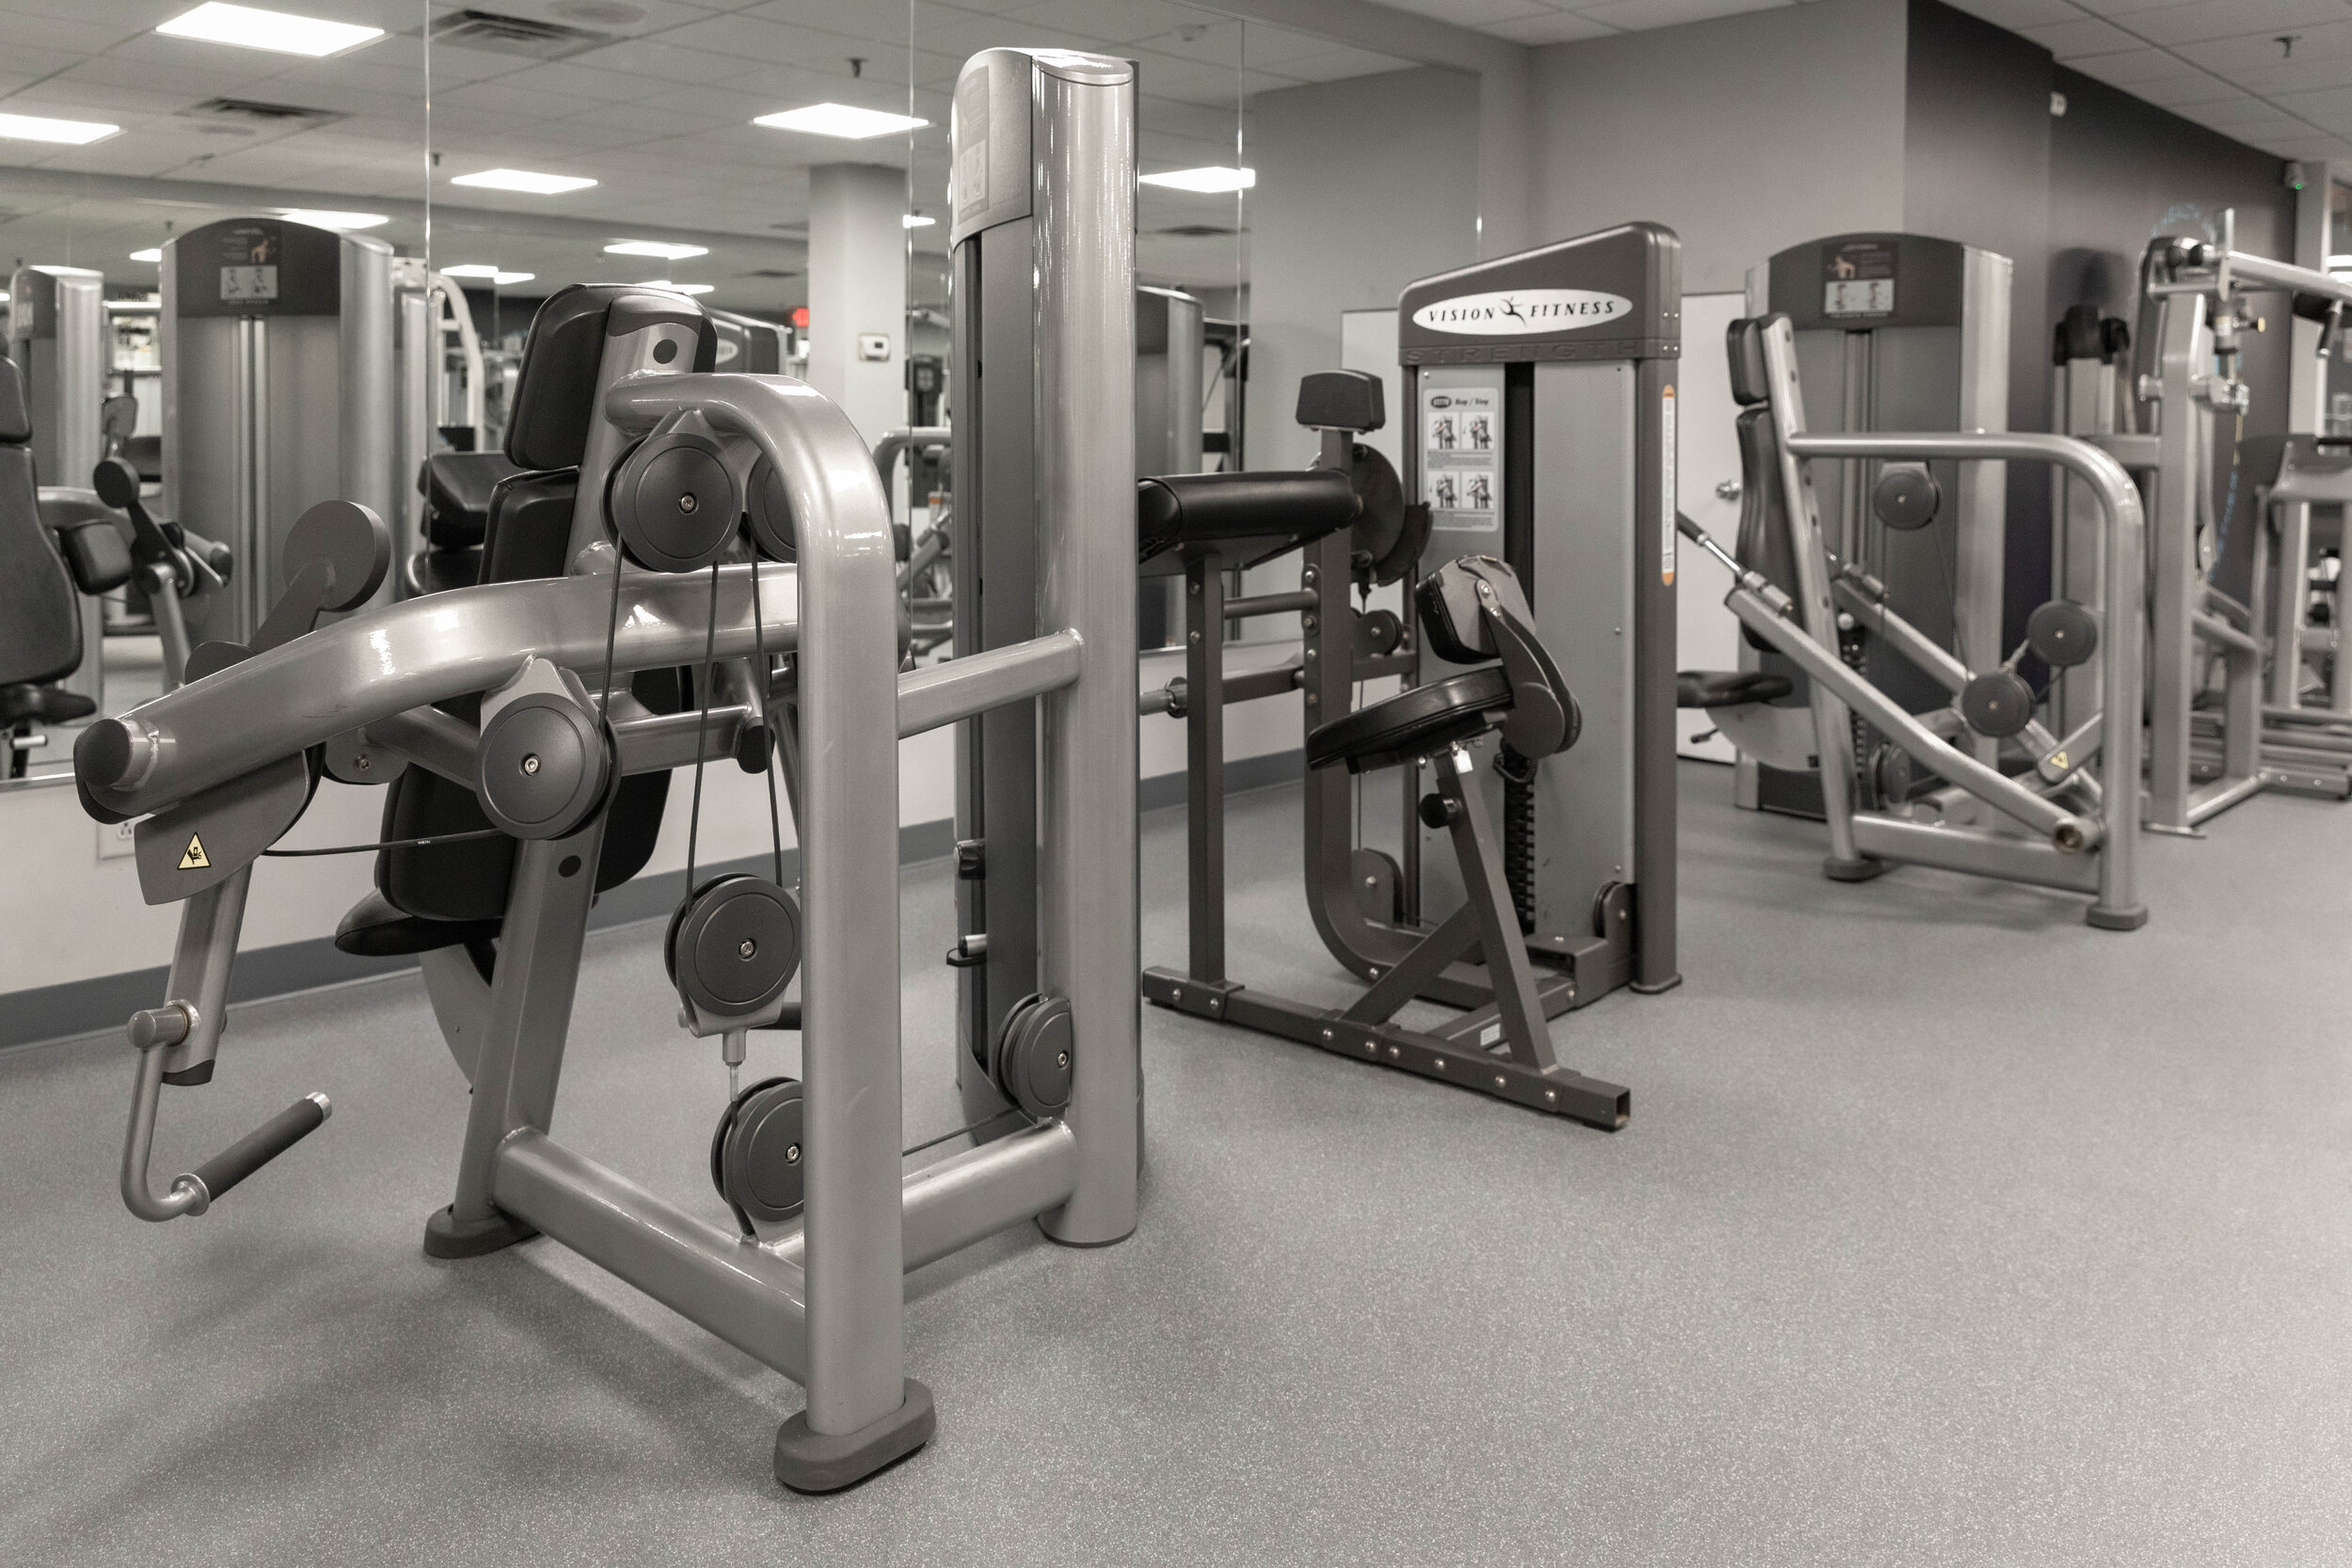 Fitness Center Machines-6.jpg